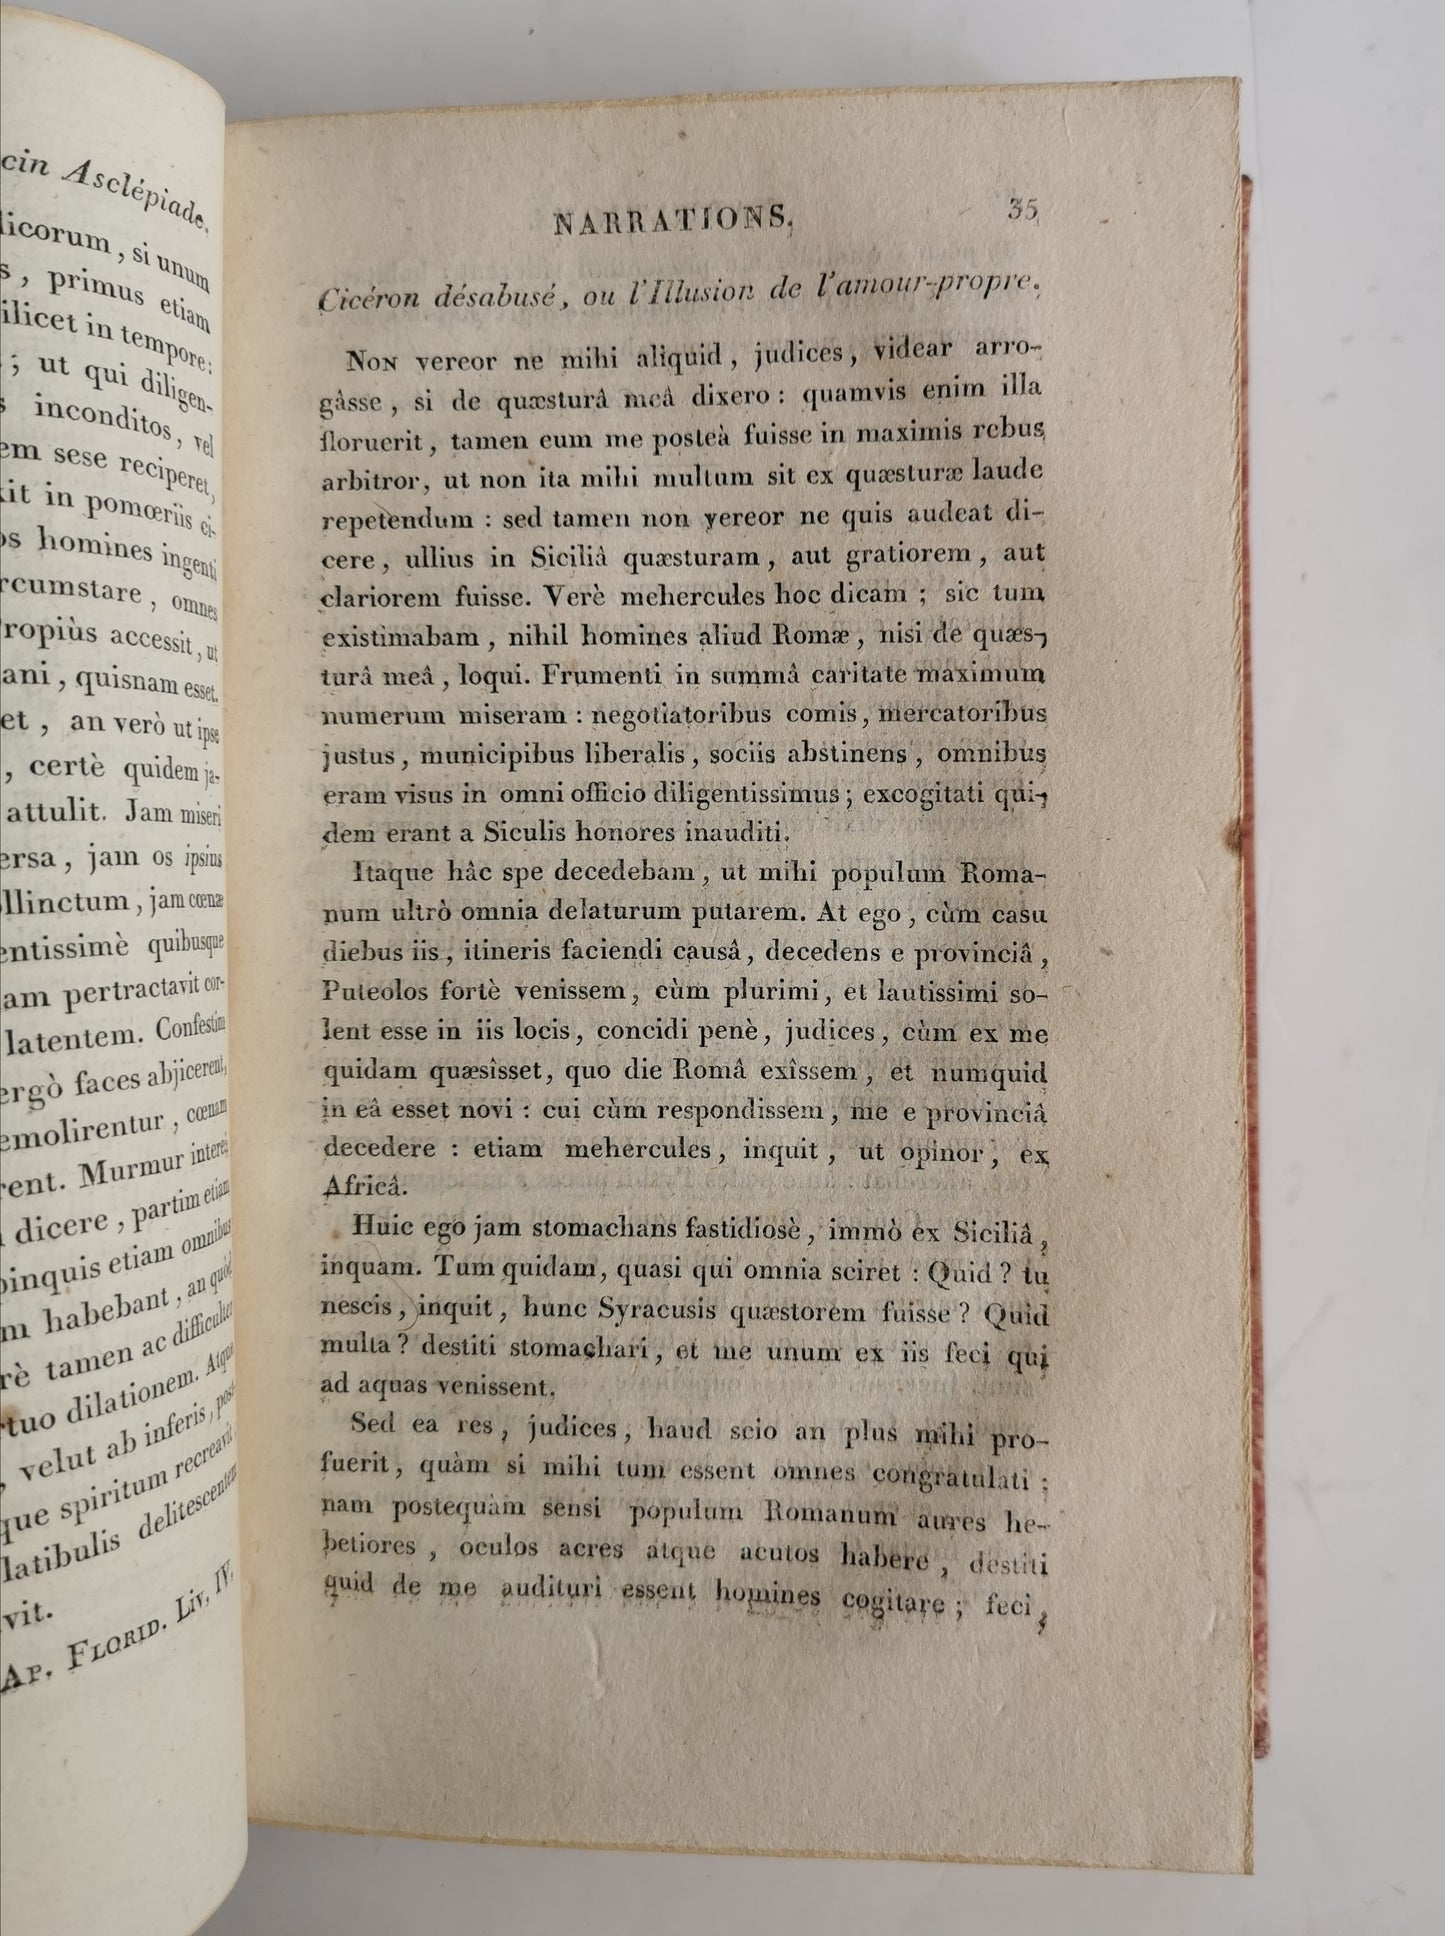 Leçons latine de littérature, Première partie, Fr. Noël, Fr. Delaplace, Le Normat/H. Nicolle, De l'imprimerie des frères Mame, 1808.